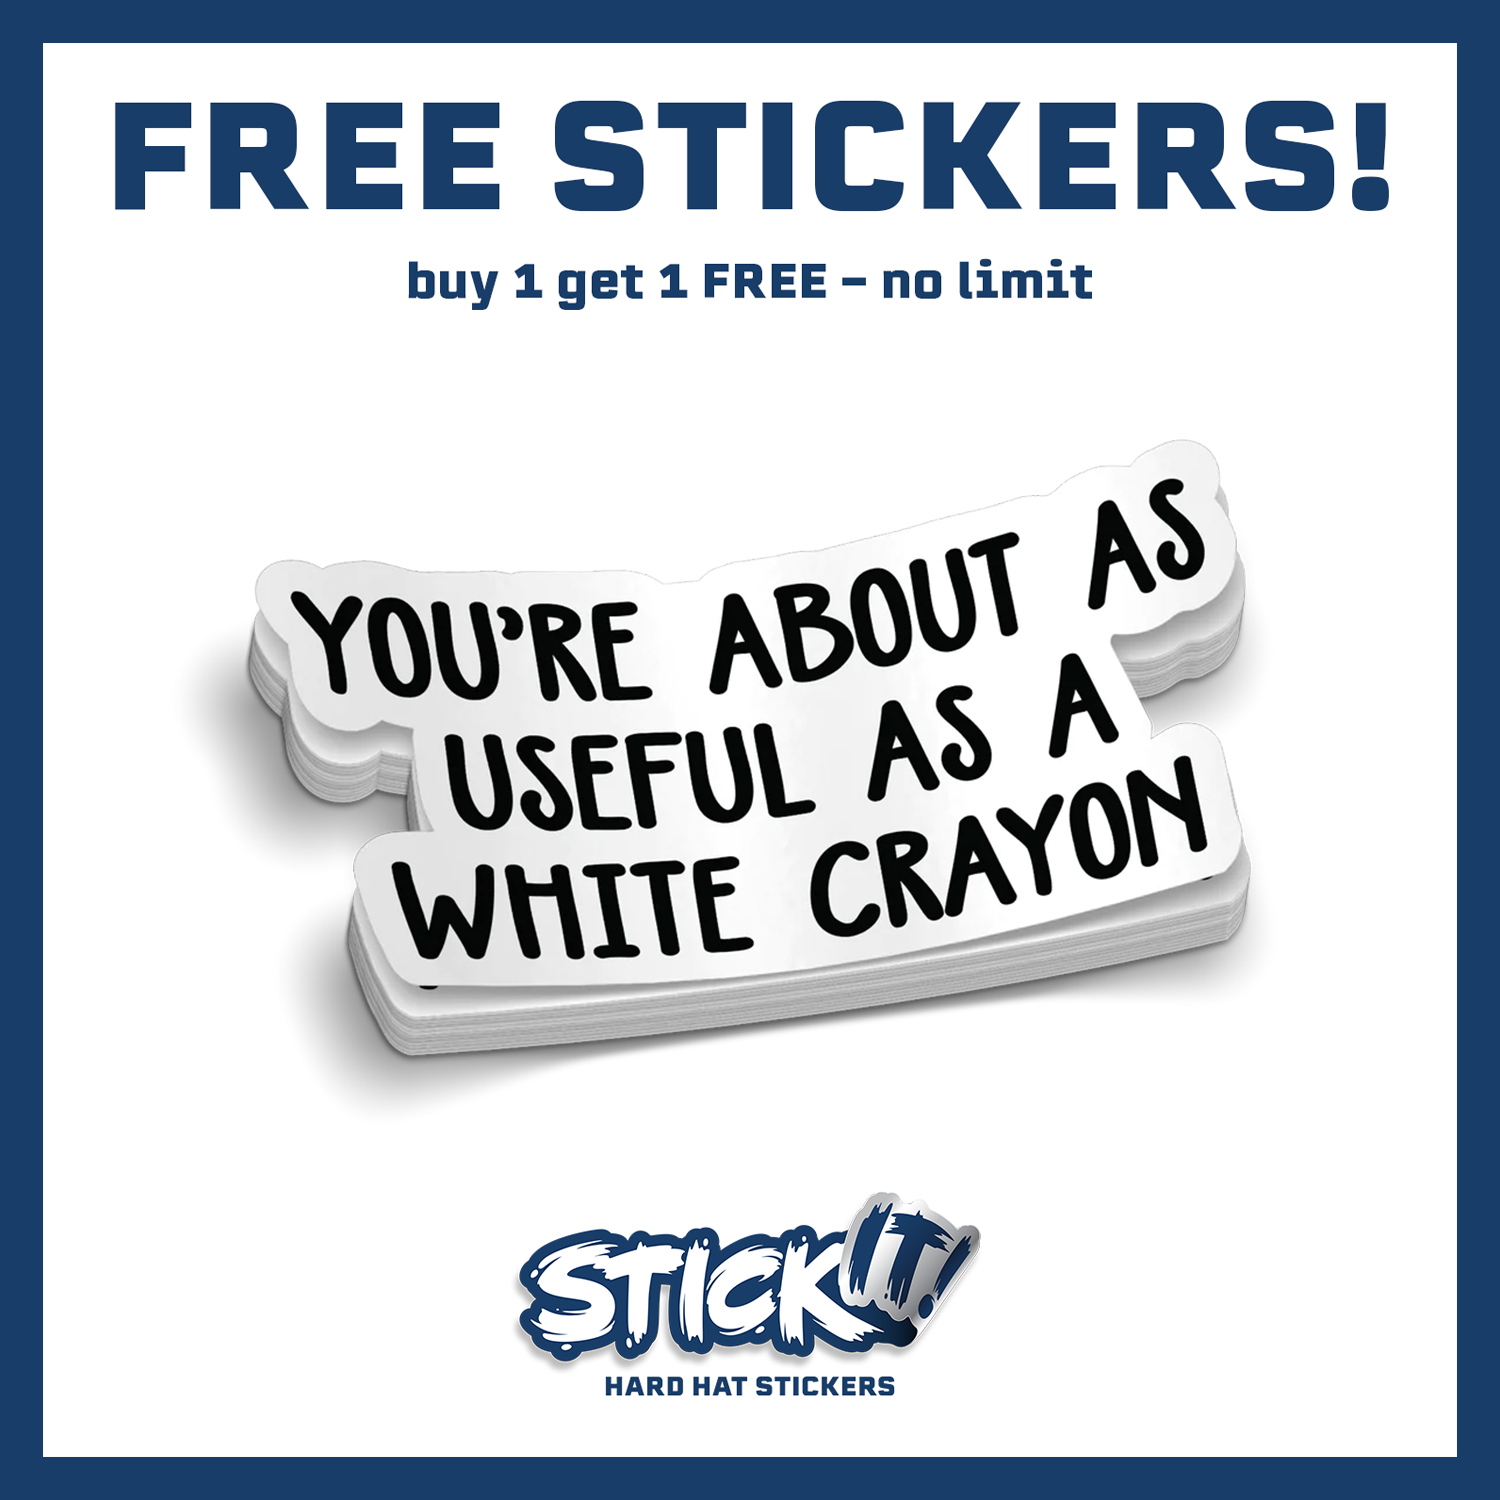 White Crayon - Hard Hat Sticker